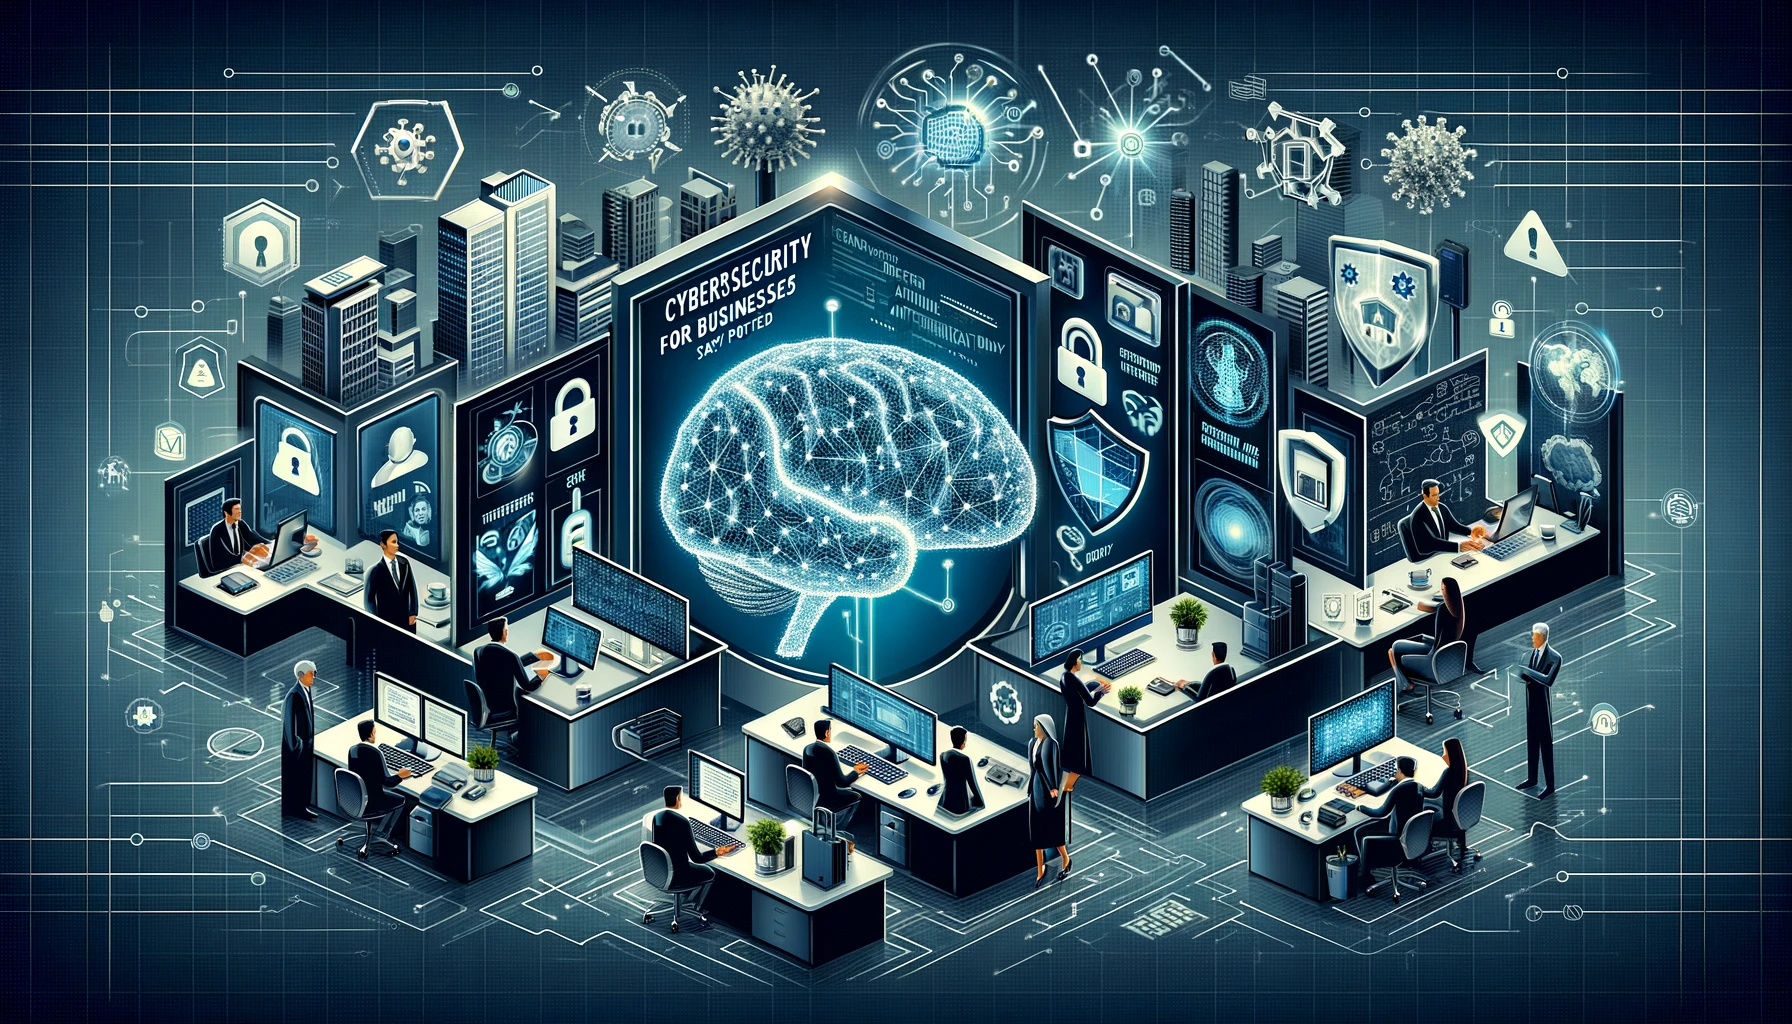 Imagen mostrando un entorno corporativo con elementos de ciberseguridad como firewalls, antivirus, IA, simbolizando protección integral en negocios.